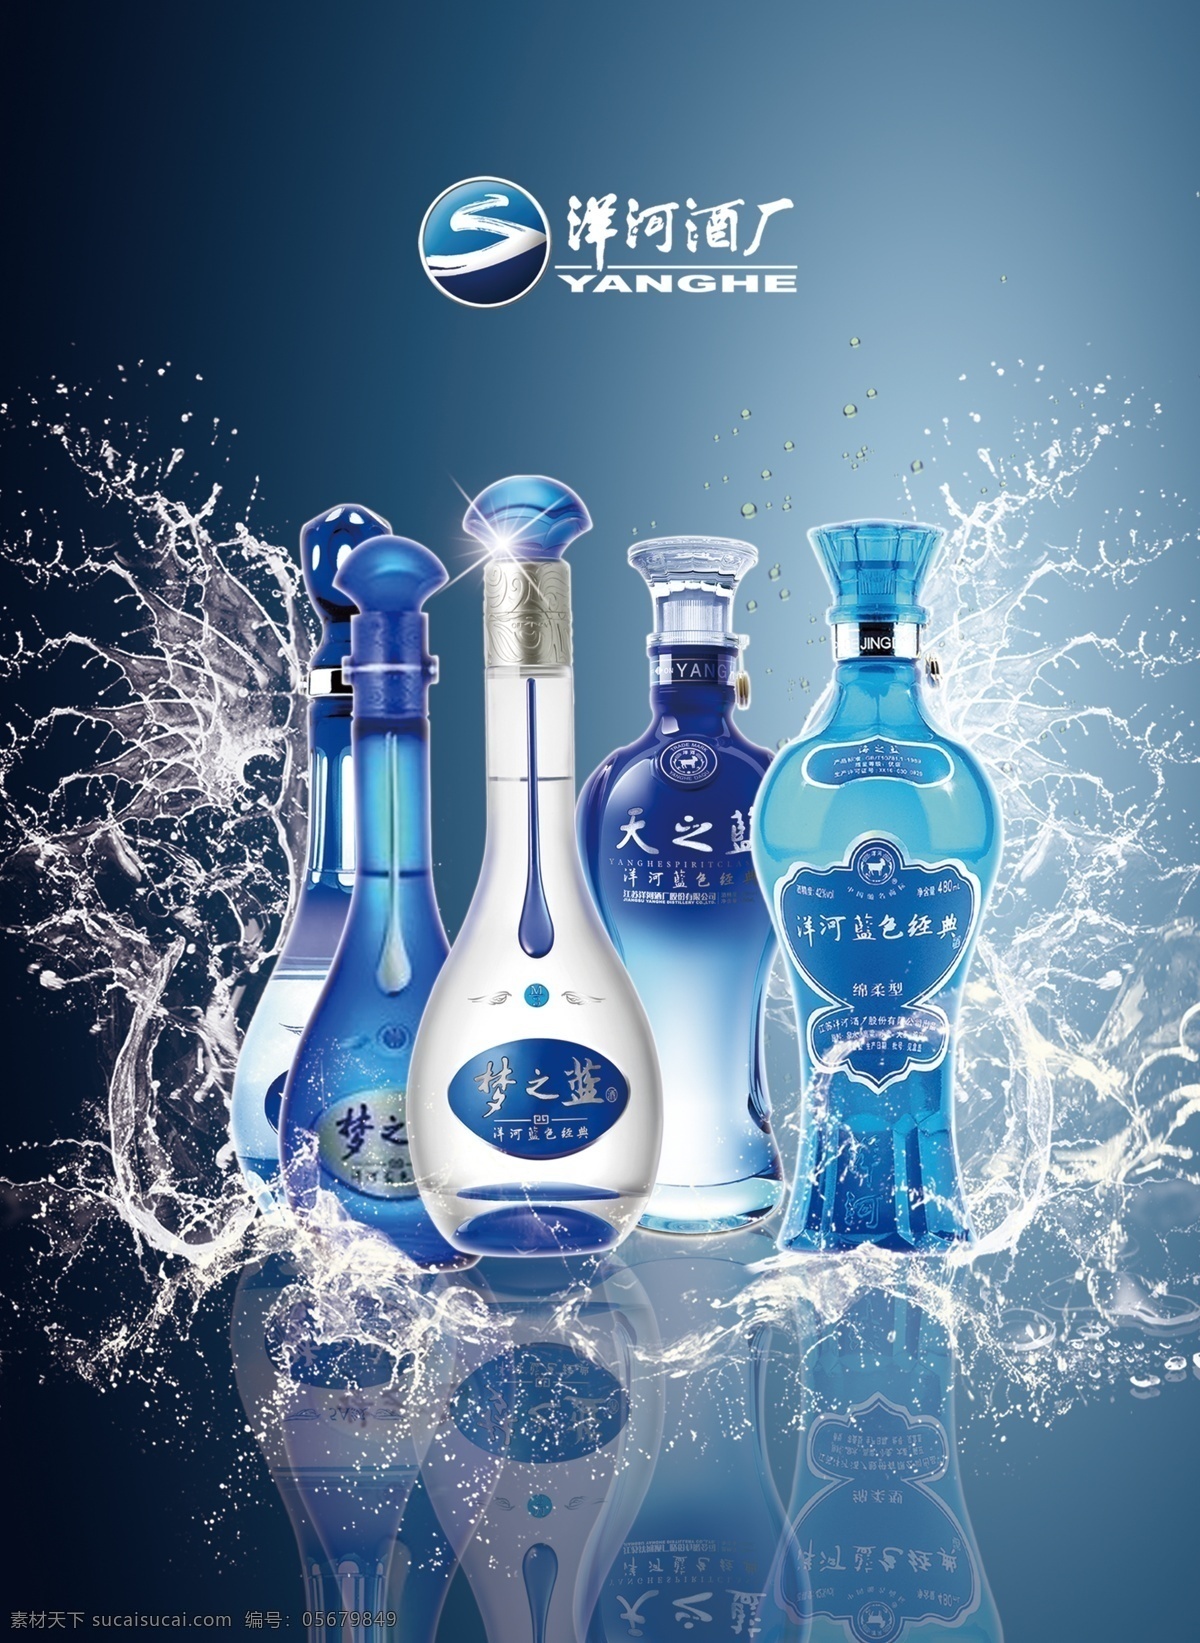 白酒广告 洋河酒 蓝色海报 酒 洋河 酒厂 logo 广告设计模板 源文件